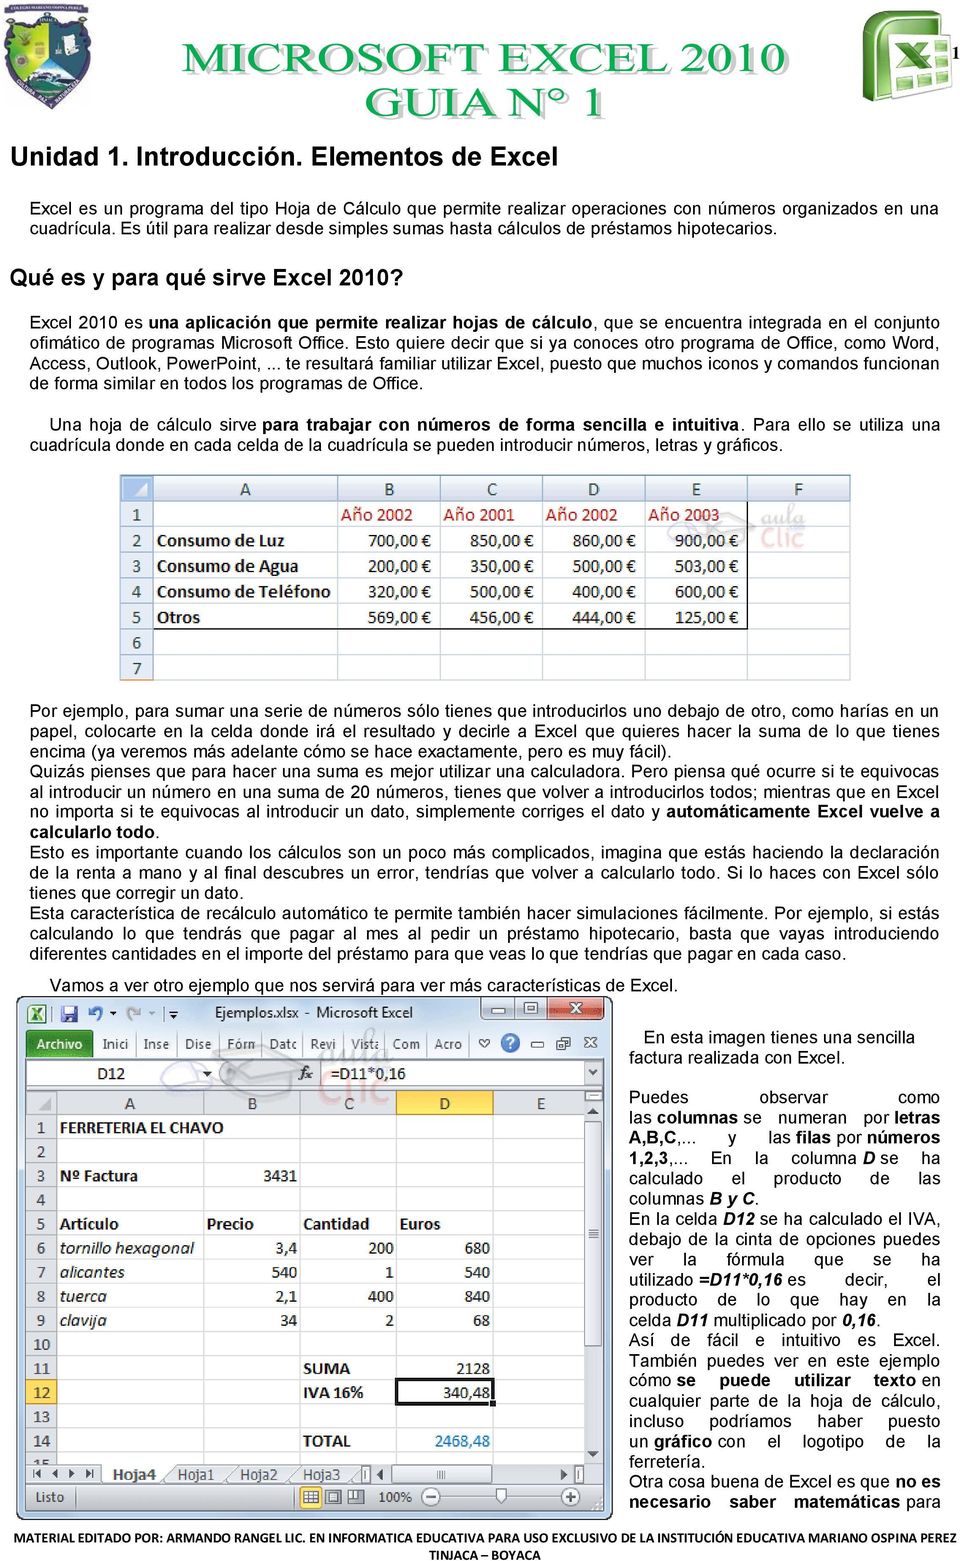 Excel 2010 es una aplicación que permite realizar hojas de cálculo, que se encuentra integrada en el conjunto ofimático de programas Microsoft Office.